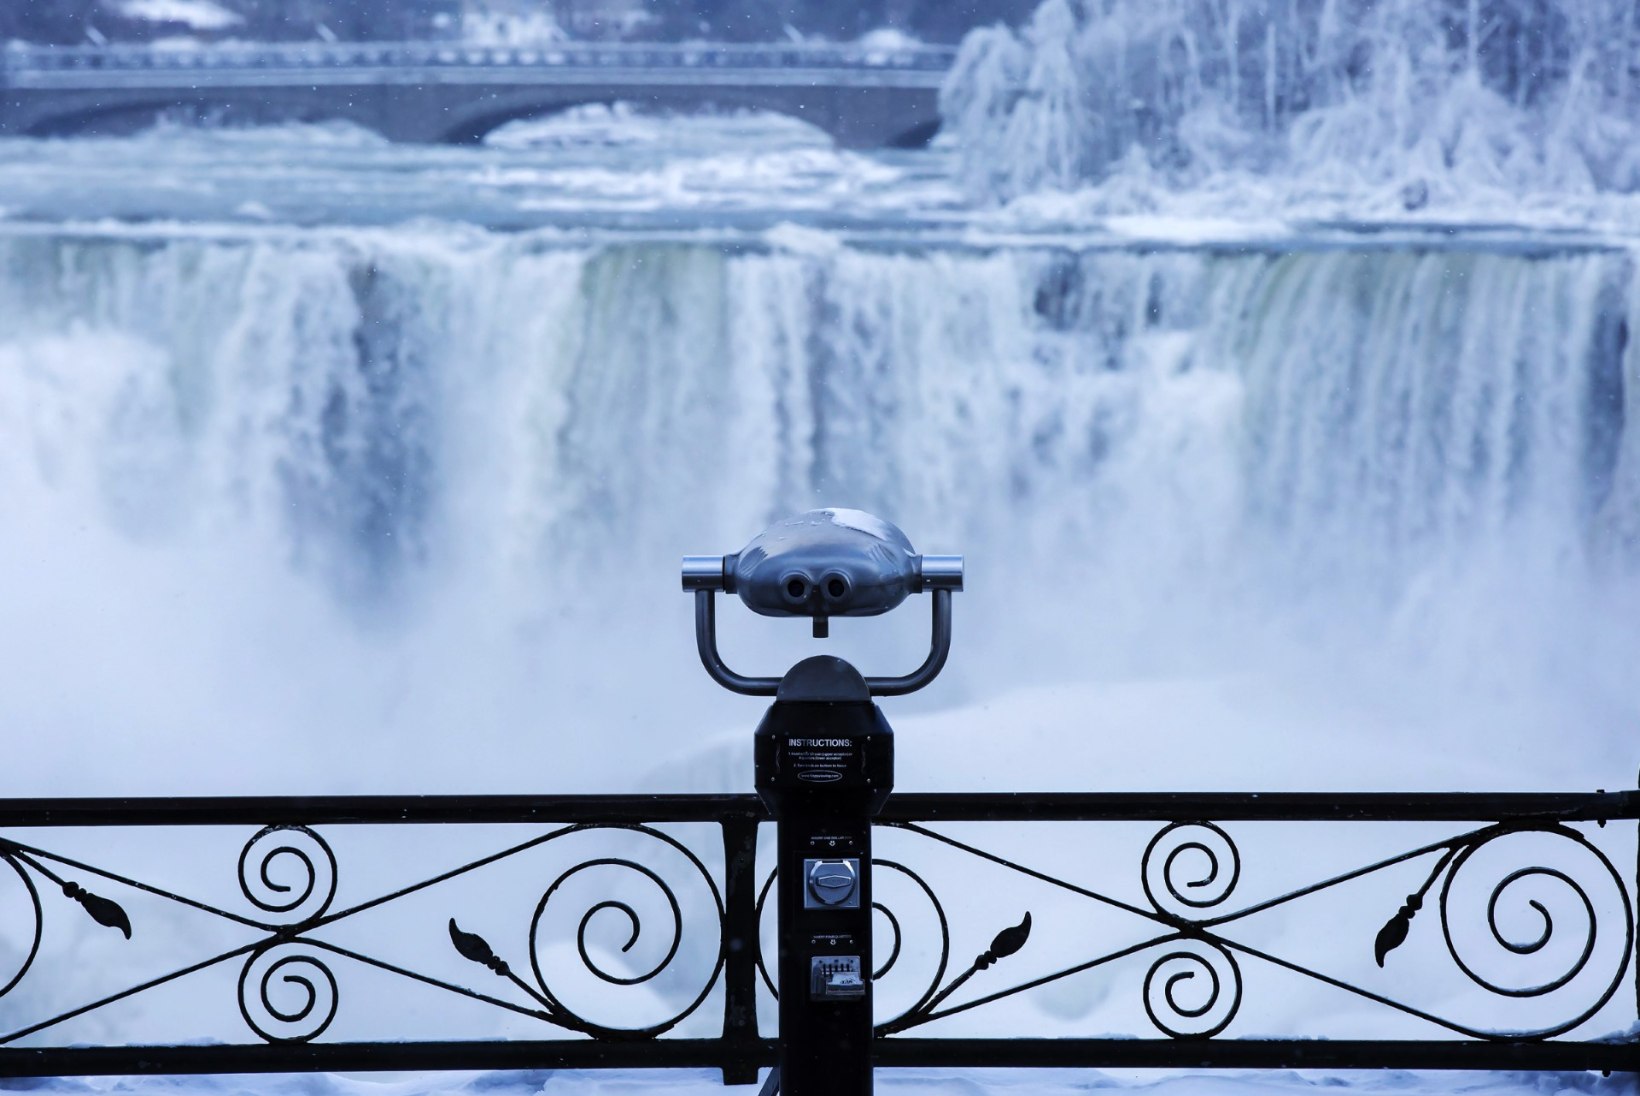 ERAKORDSED FOTOD | Pakane jäätas kuulsa Niagara joa 